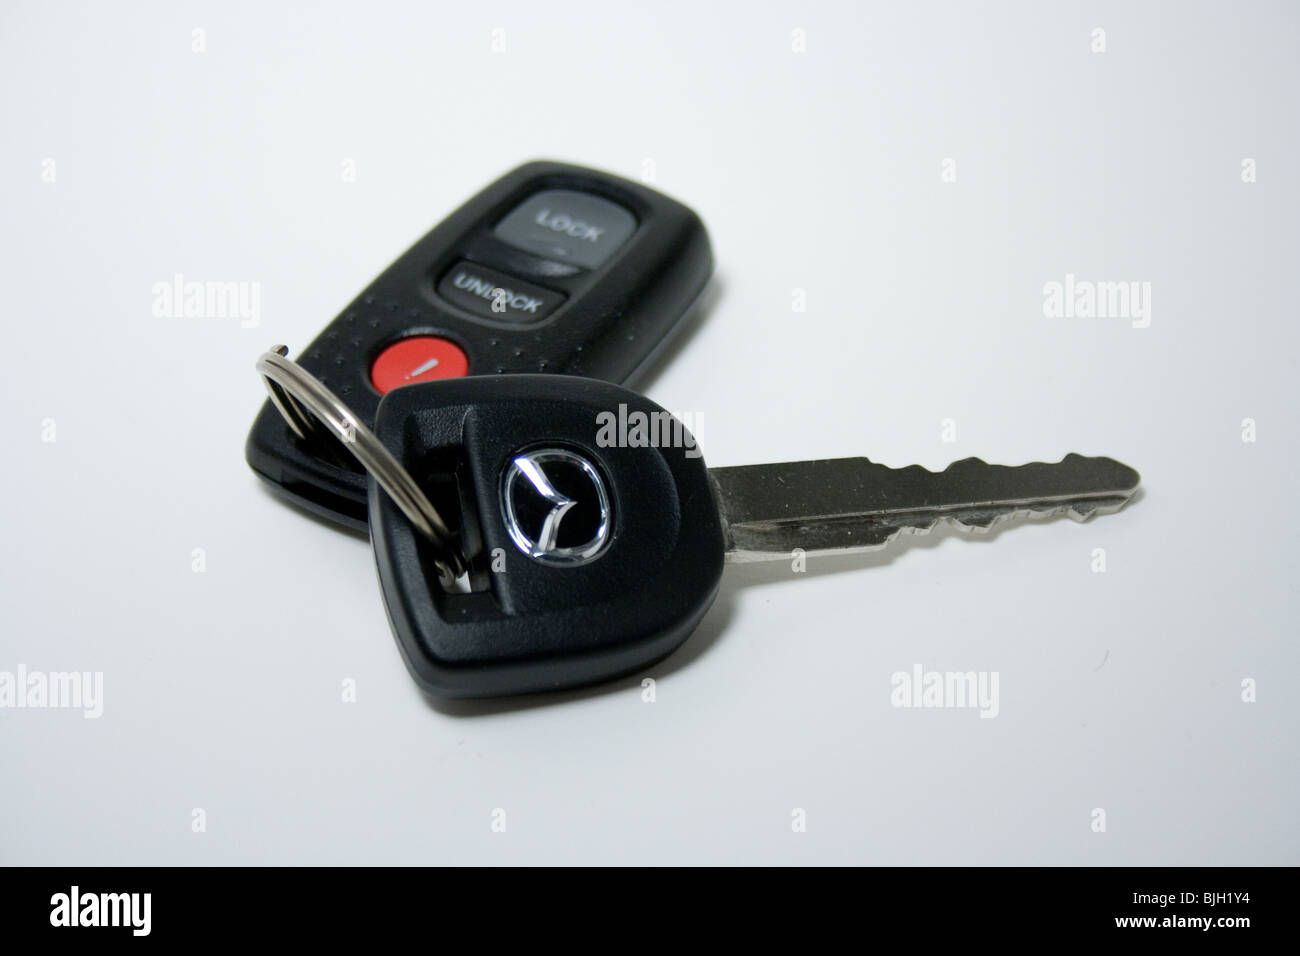 car key remote white background isolated panic lock unlock mazda Japanese import sales Stock Photo